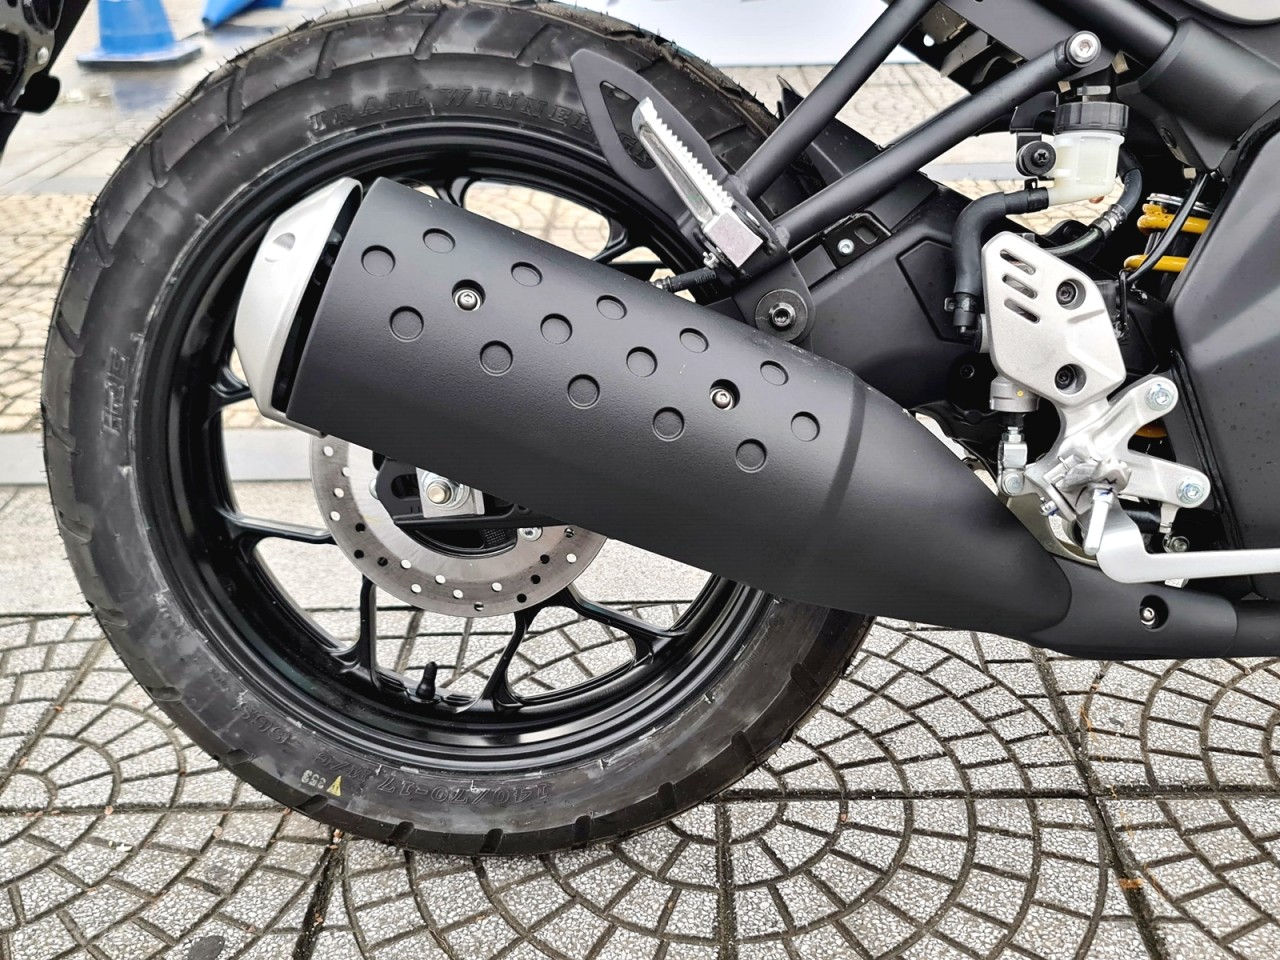 Cận cảnh Yamaha XS155R - xe mô tô mang phong cách Neo-Retro